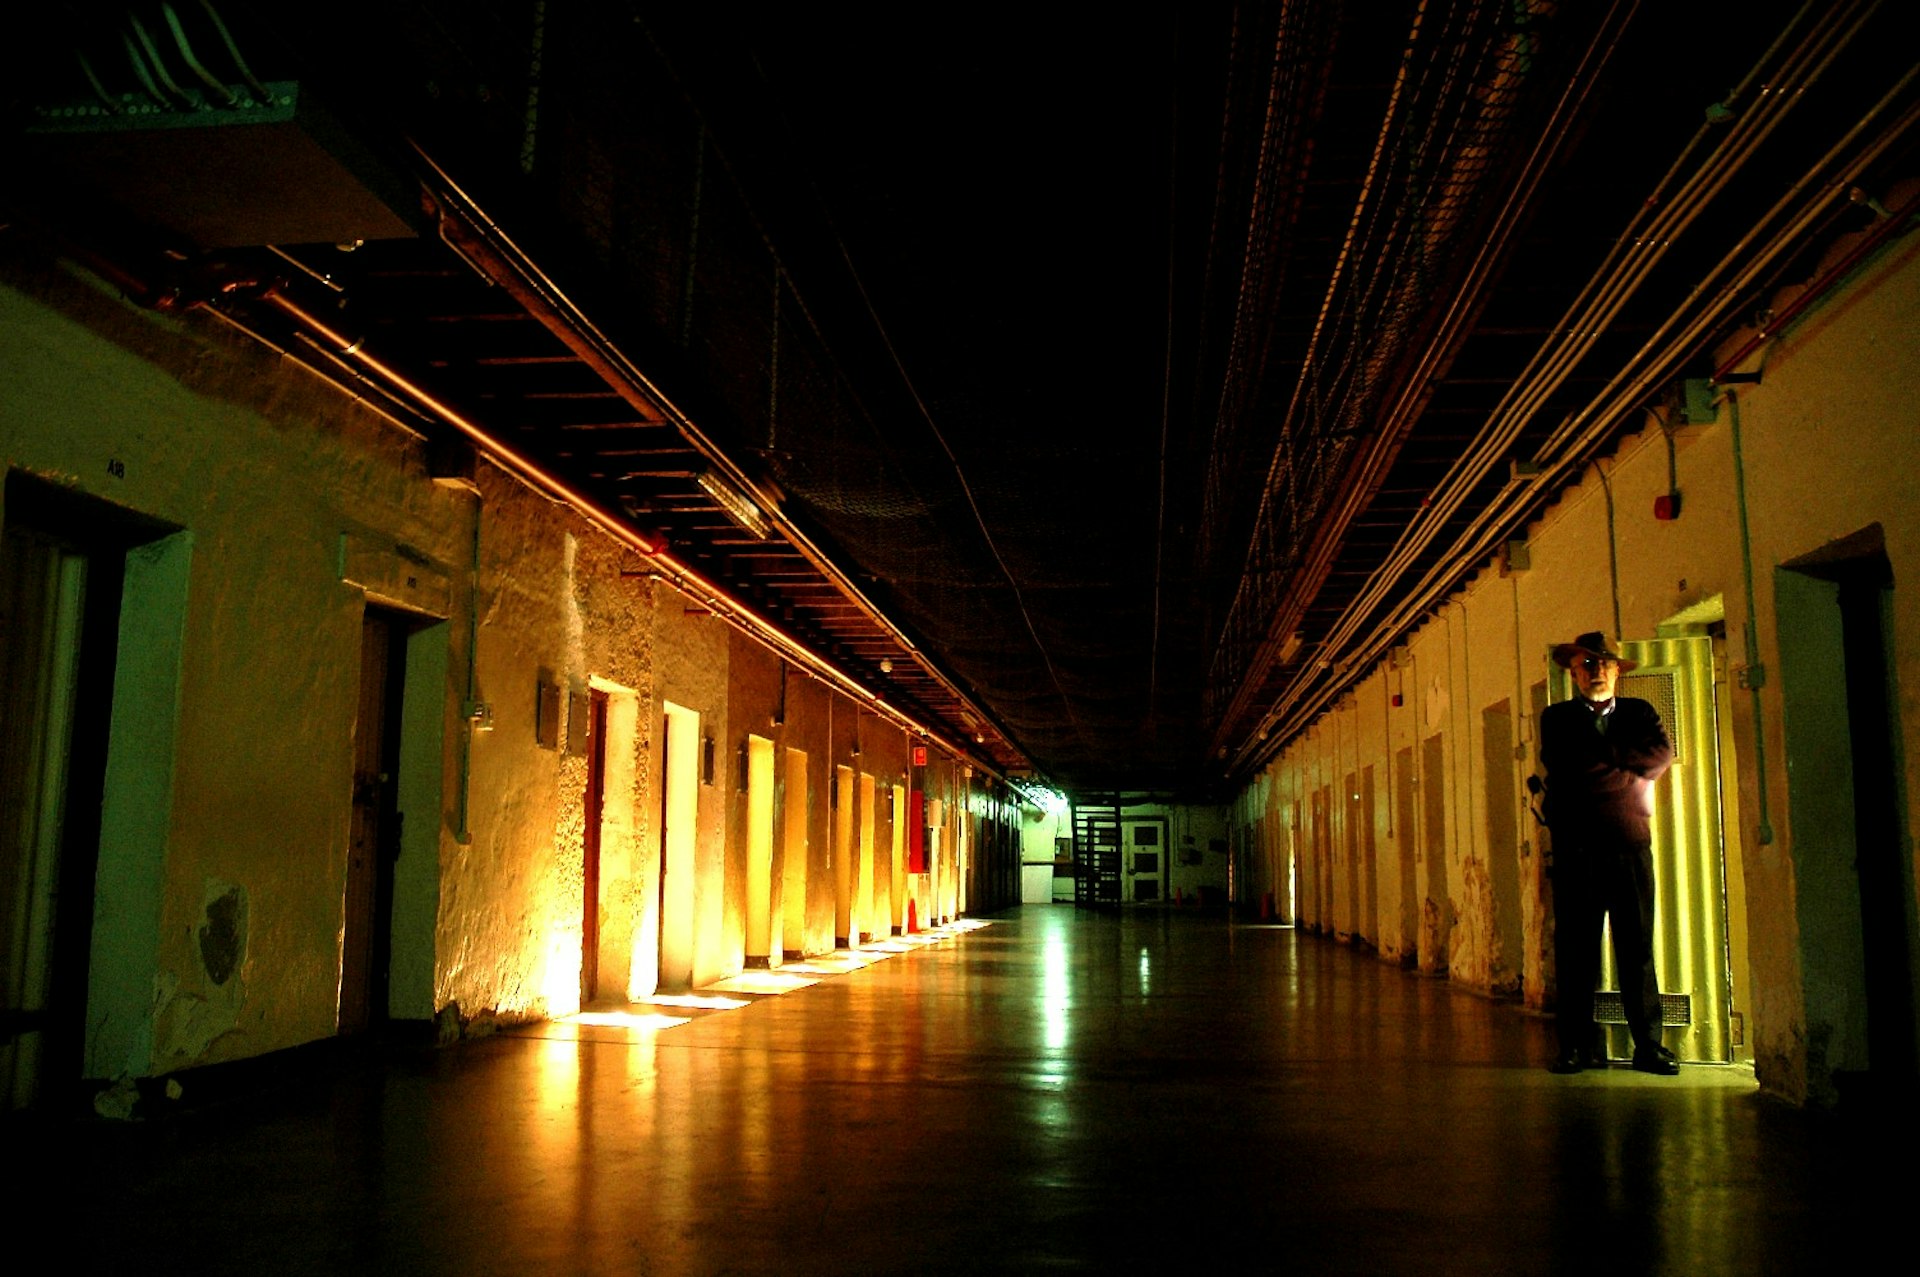 Spooky cities - Fremantle prison